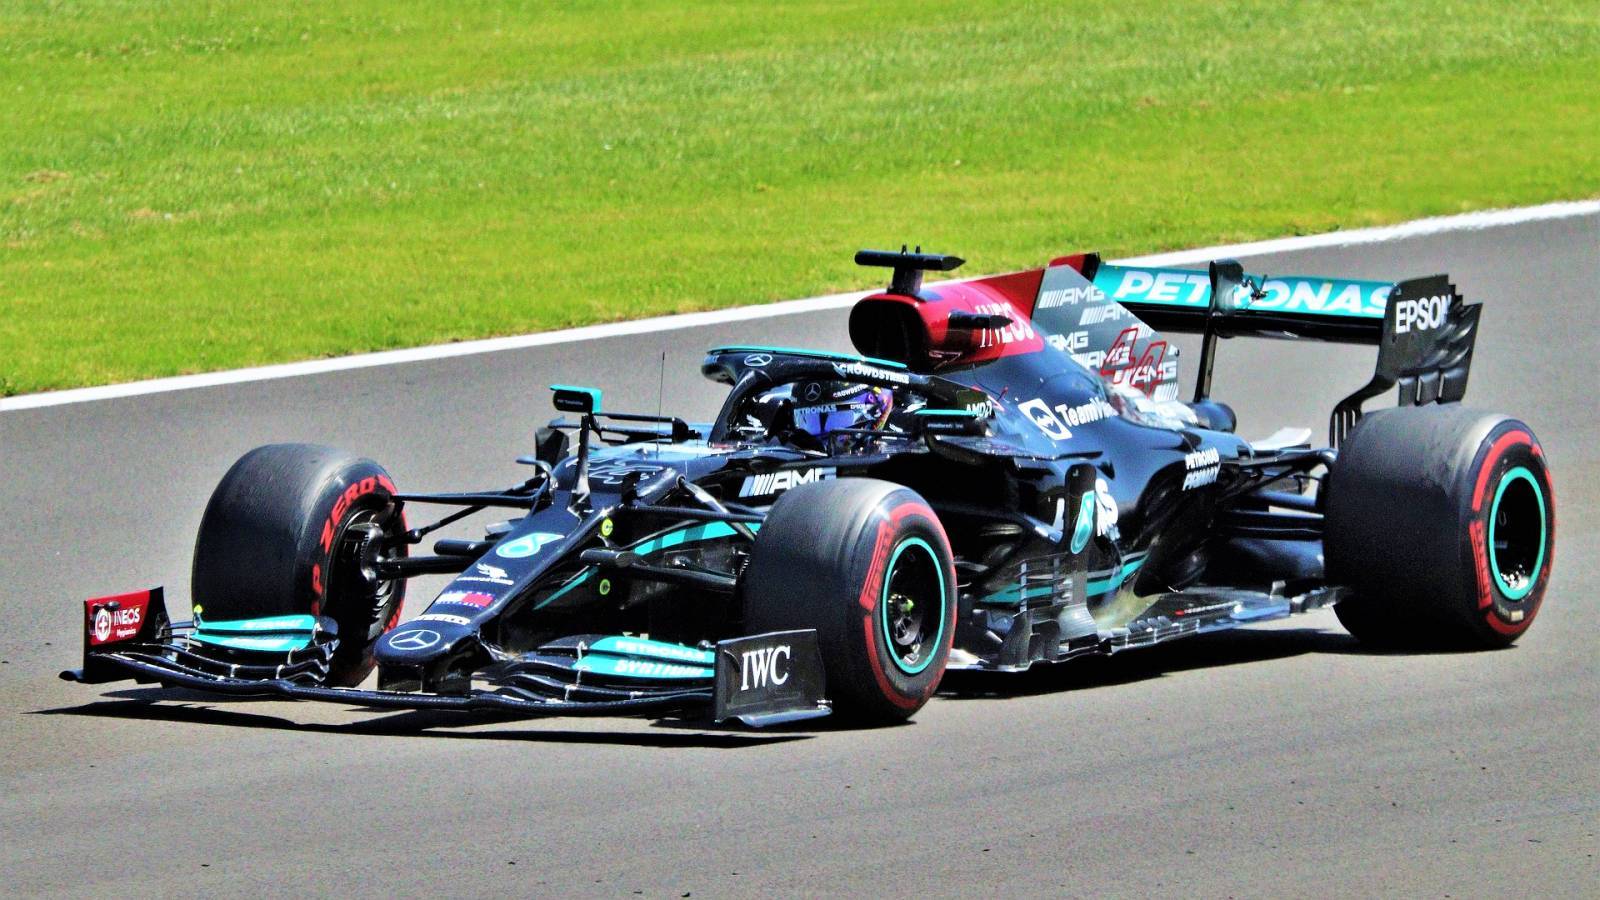 Formule 1 Lewis Hamilton Ciblé CRITIQUES Officiel LAST MOMENT Mercedes MP Chine